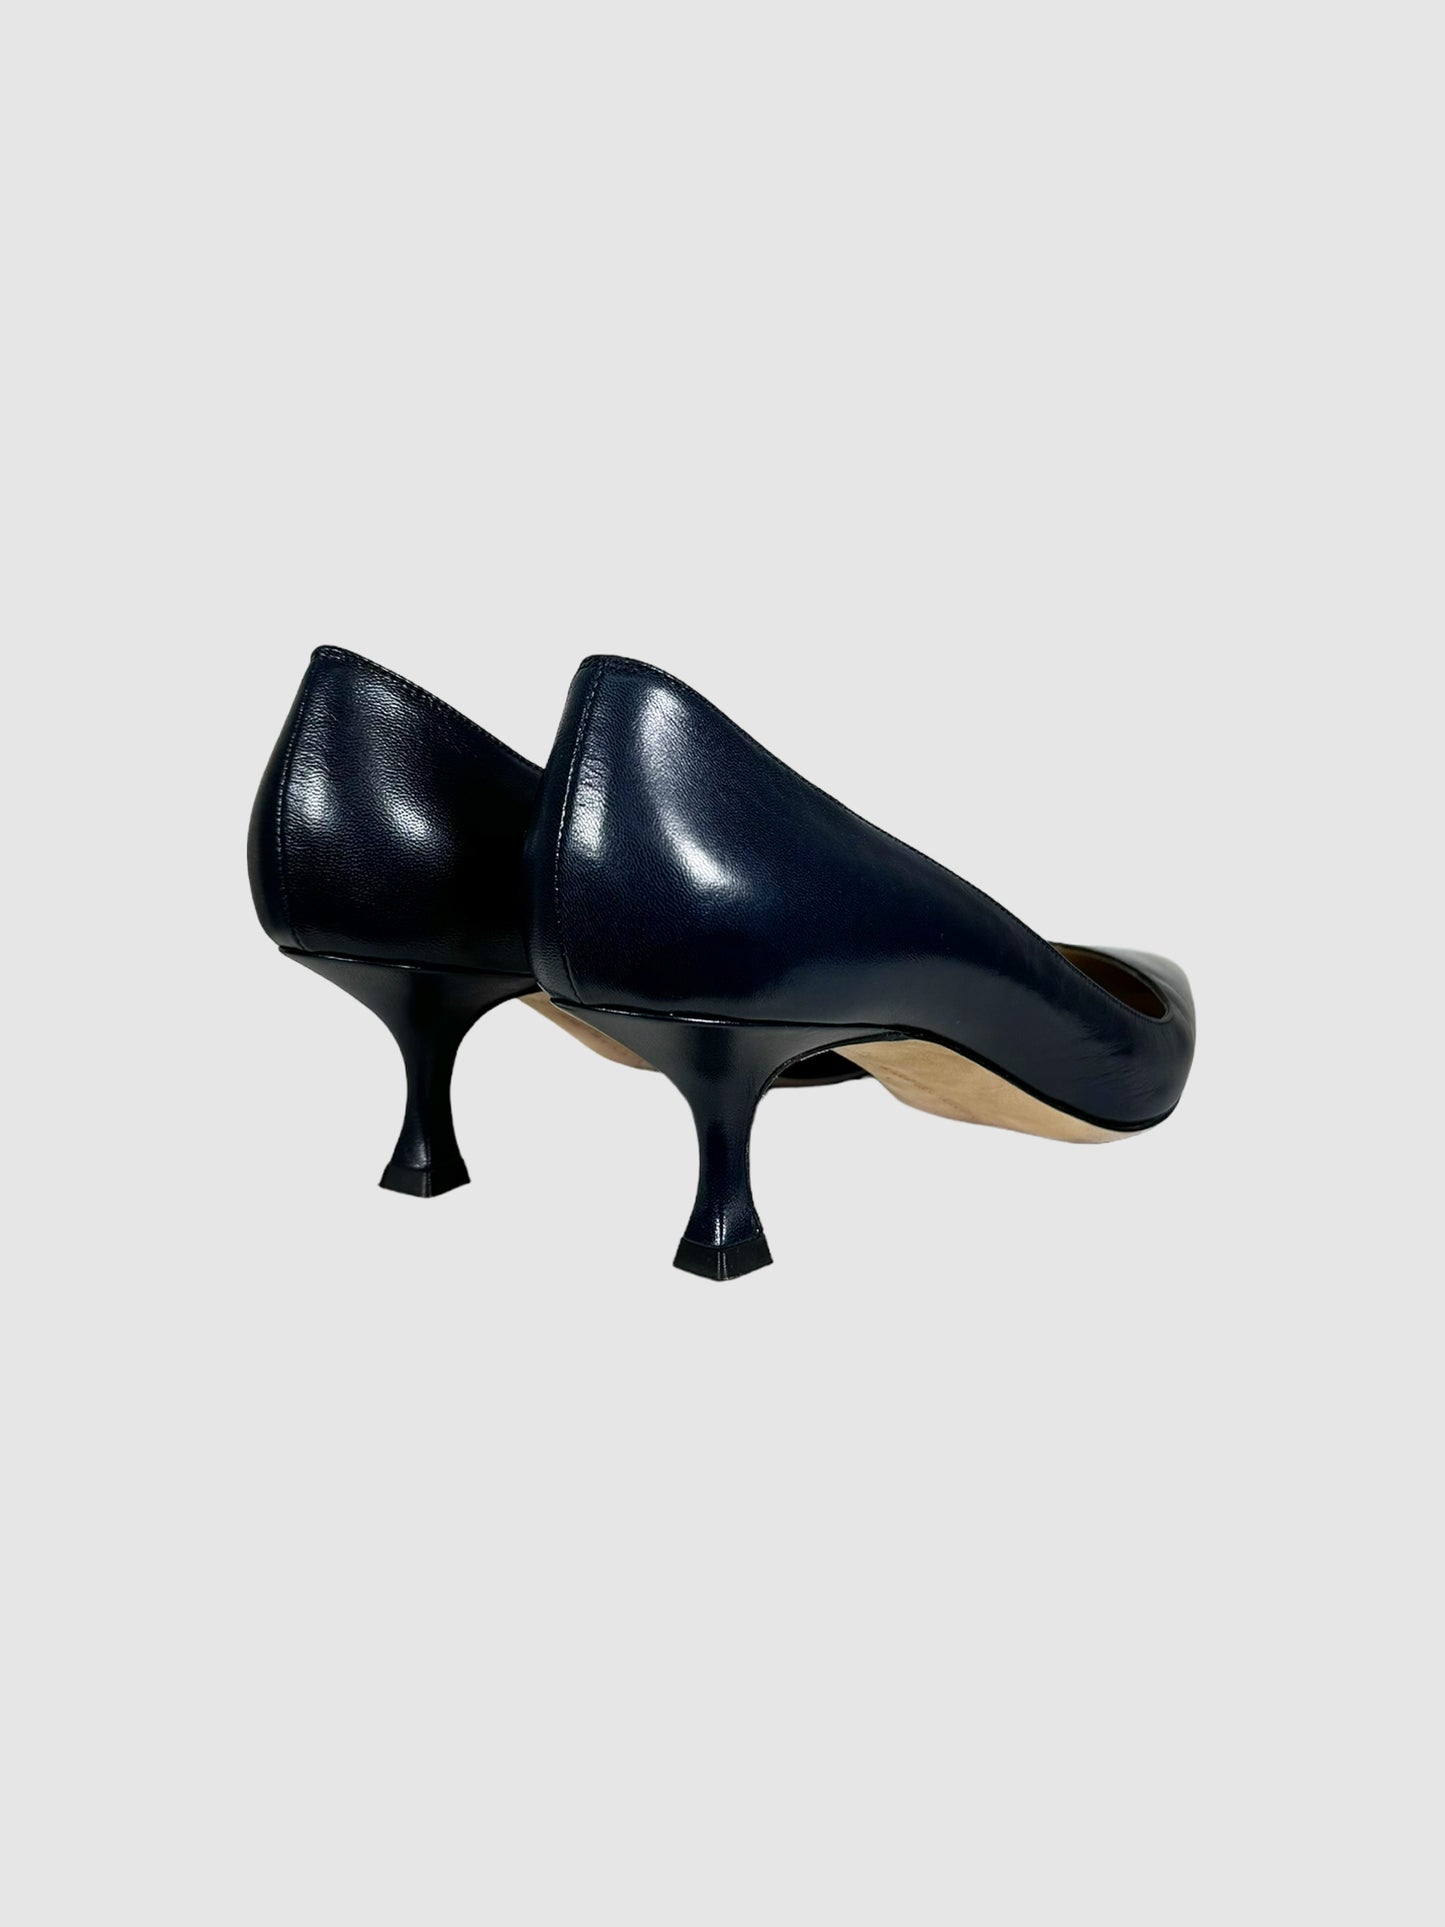 Manolo Blahnik Leather Kitten Heels - Size 37.5